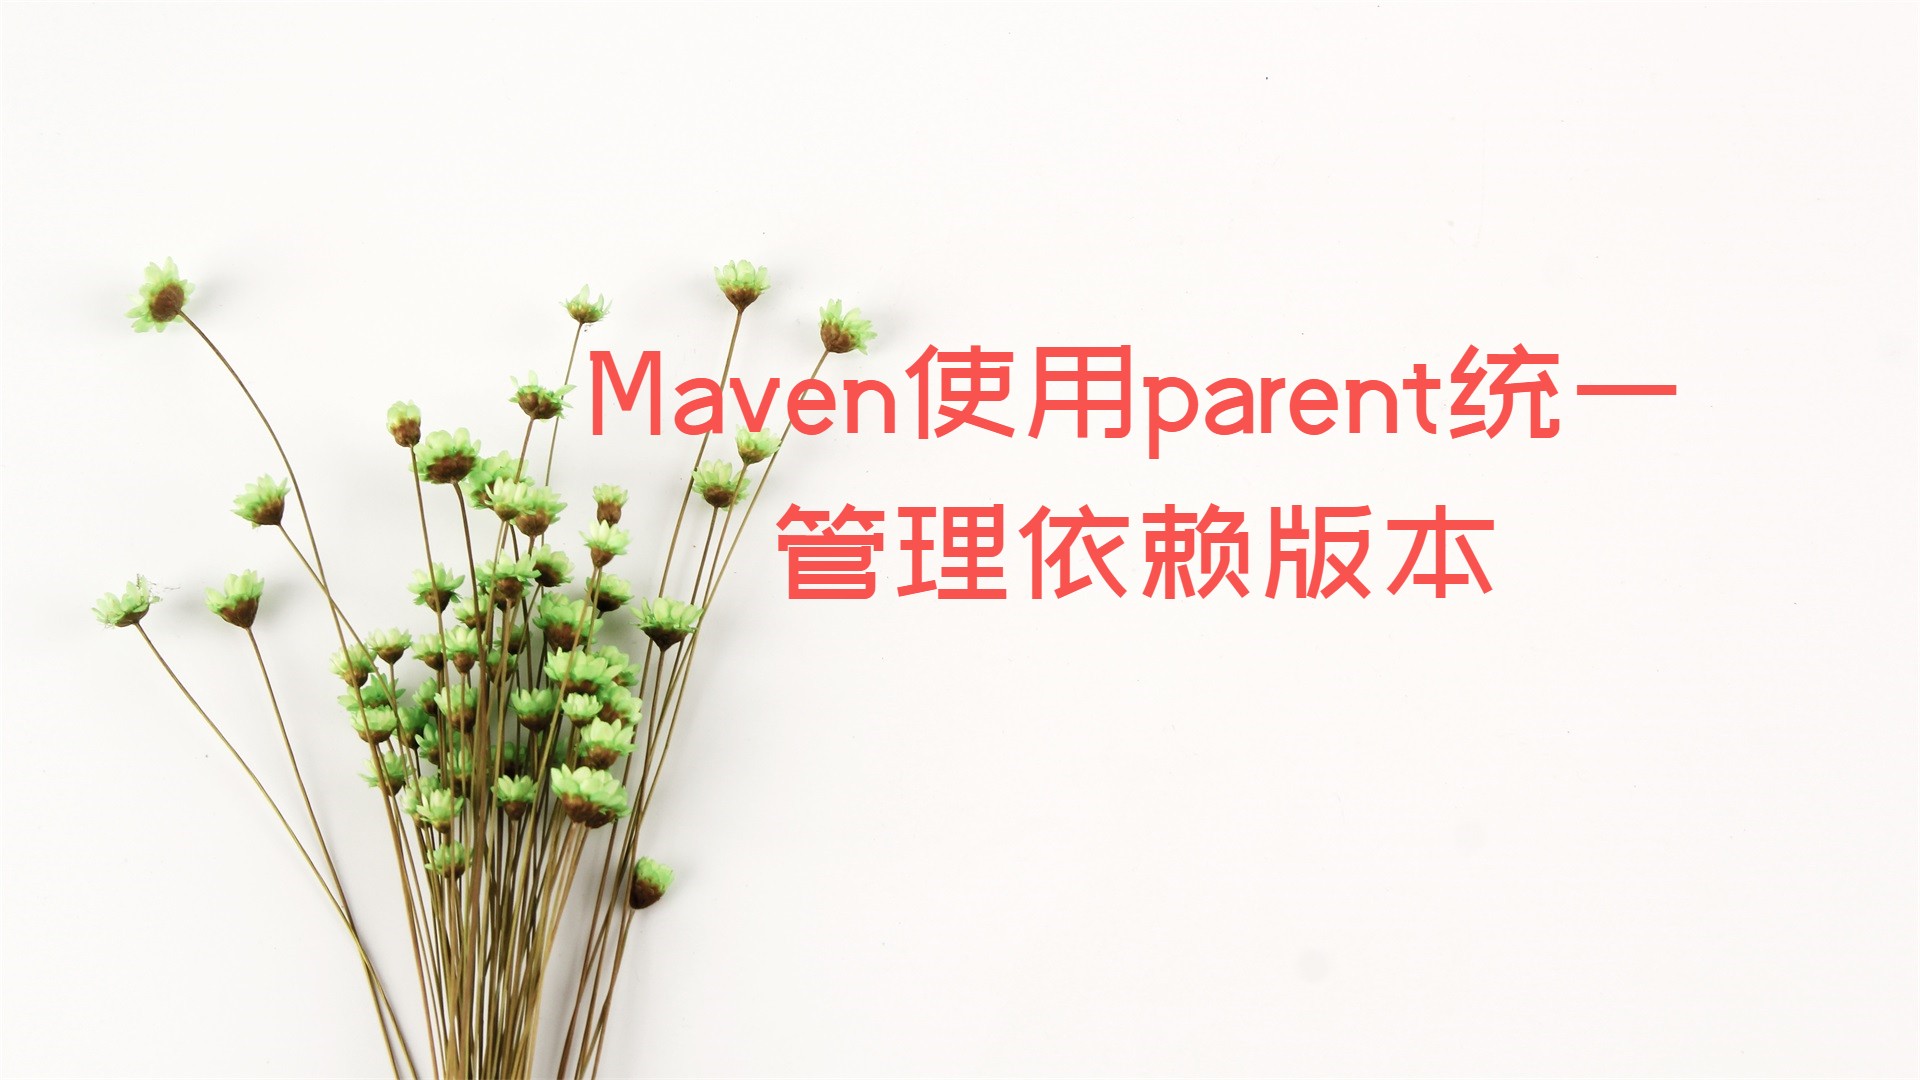 Maven使用parent统一管理依赖版本